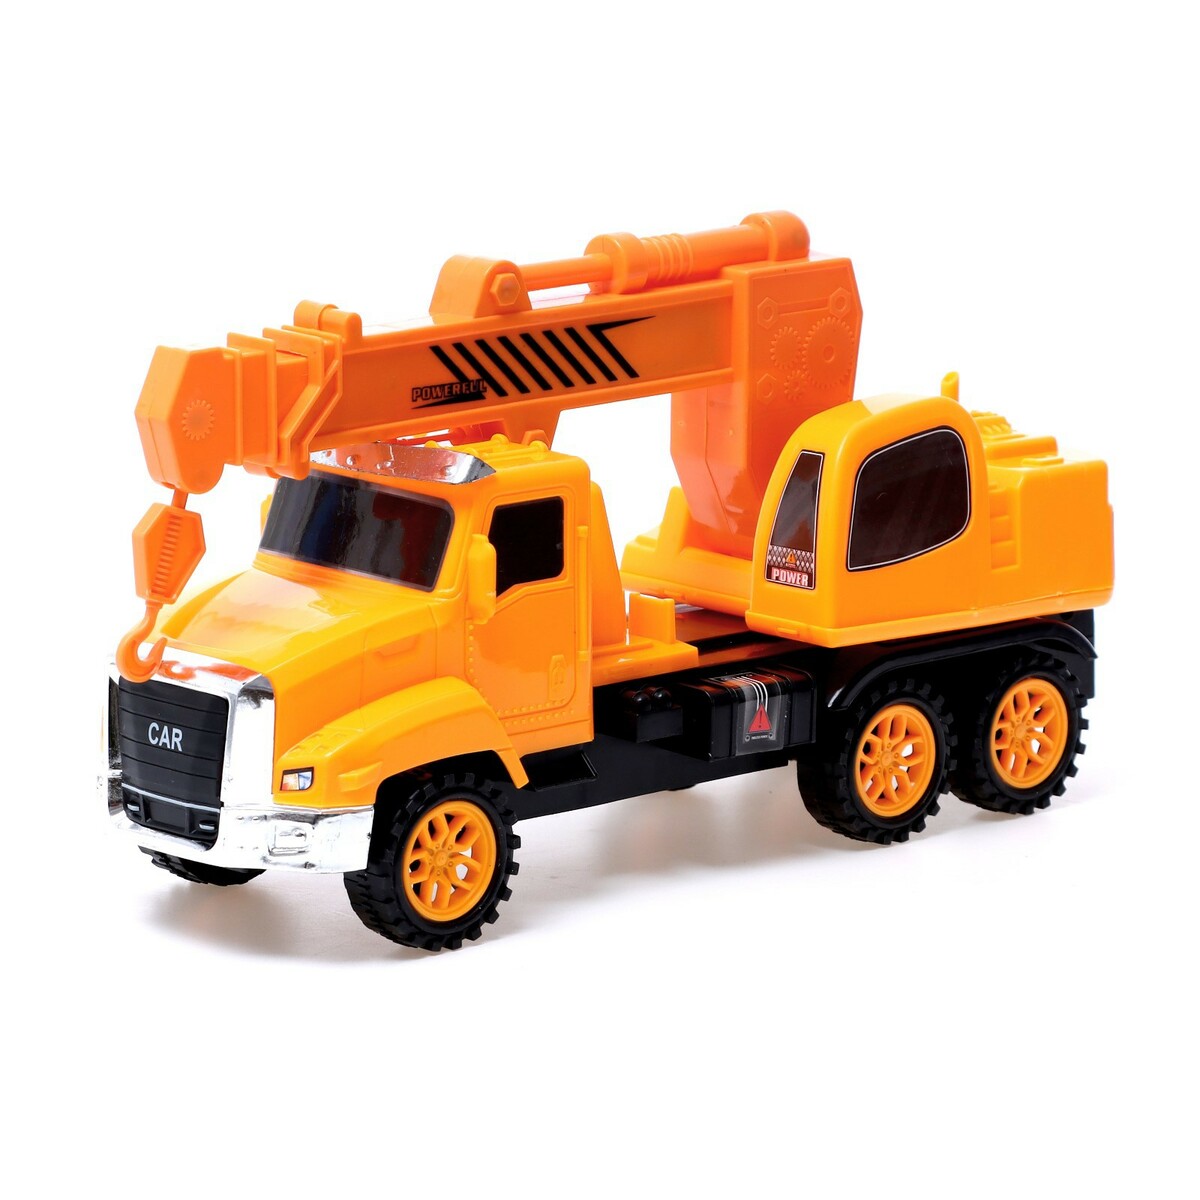 Грузовик инерционный fun toy грузовик инерционный электромеxанический 44404 10